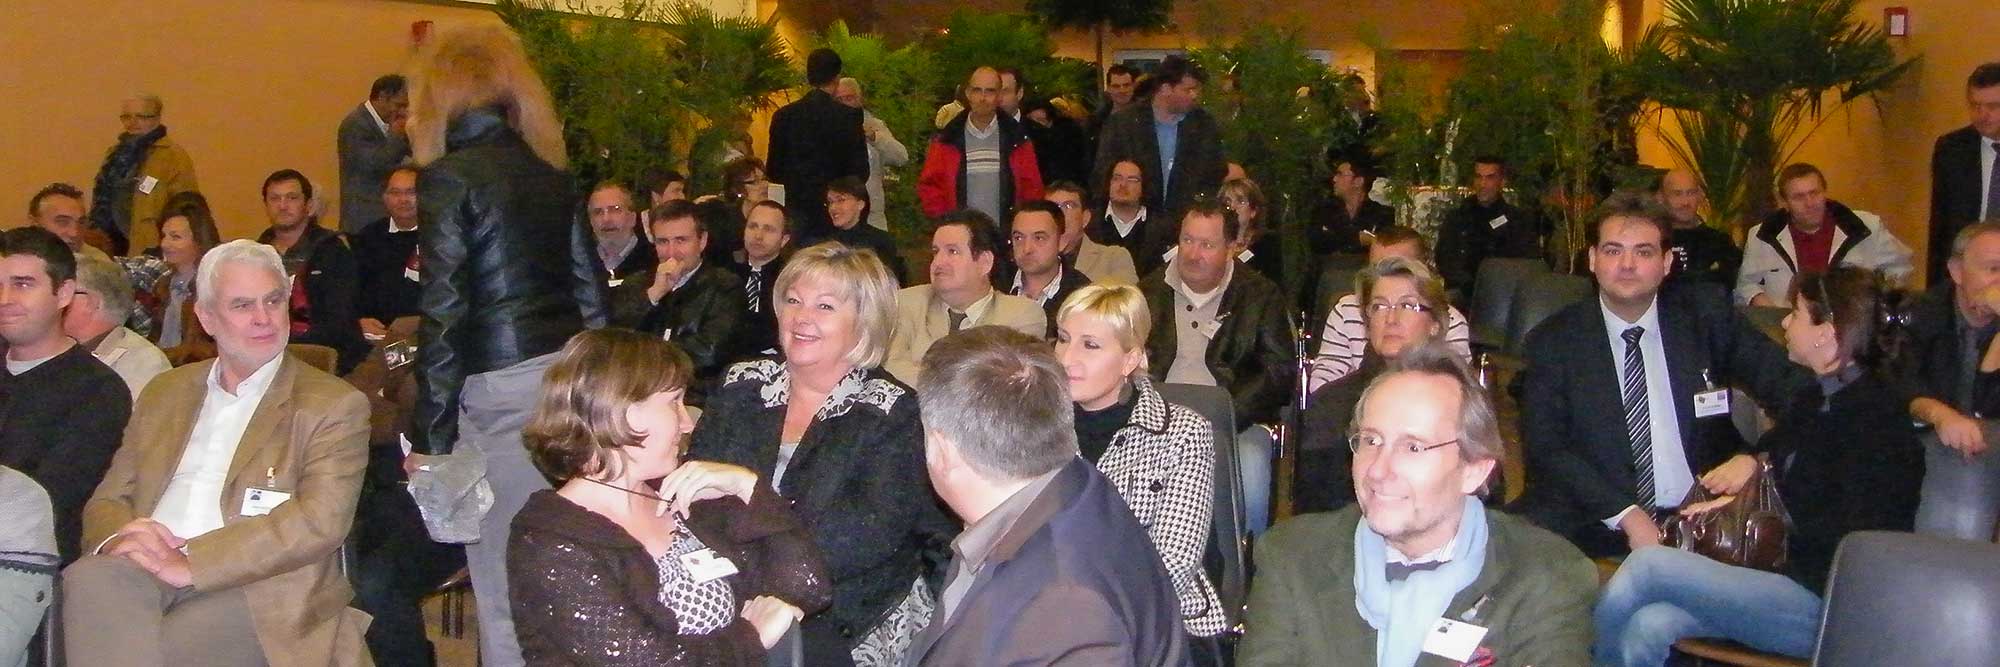 soirée inter-club 2011